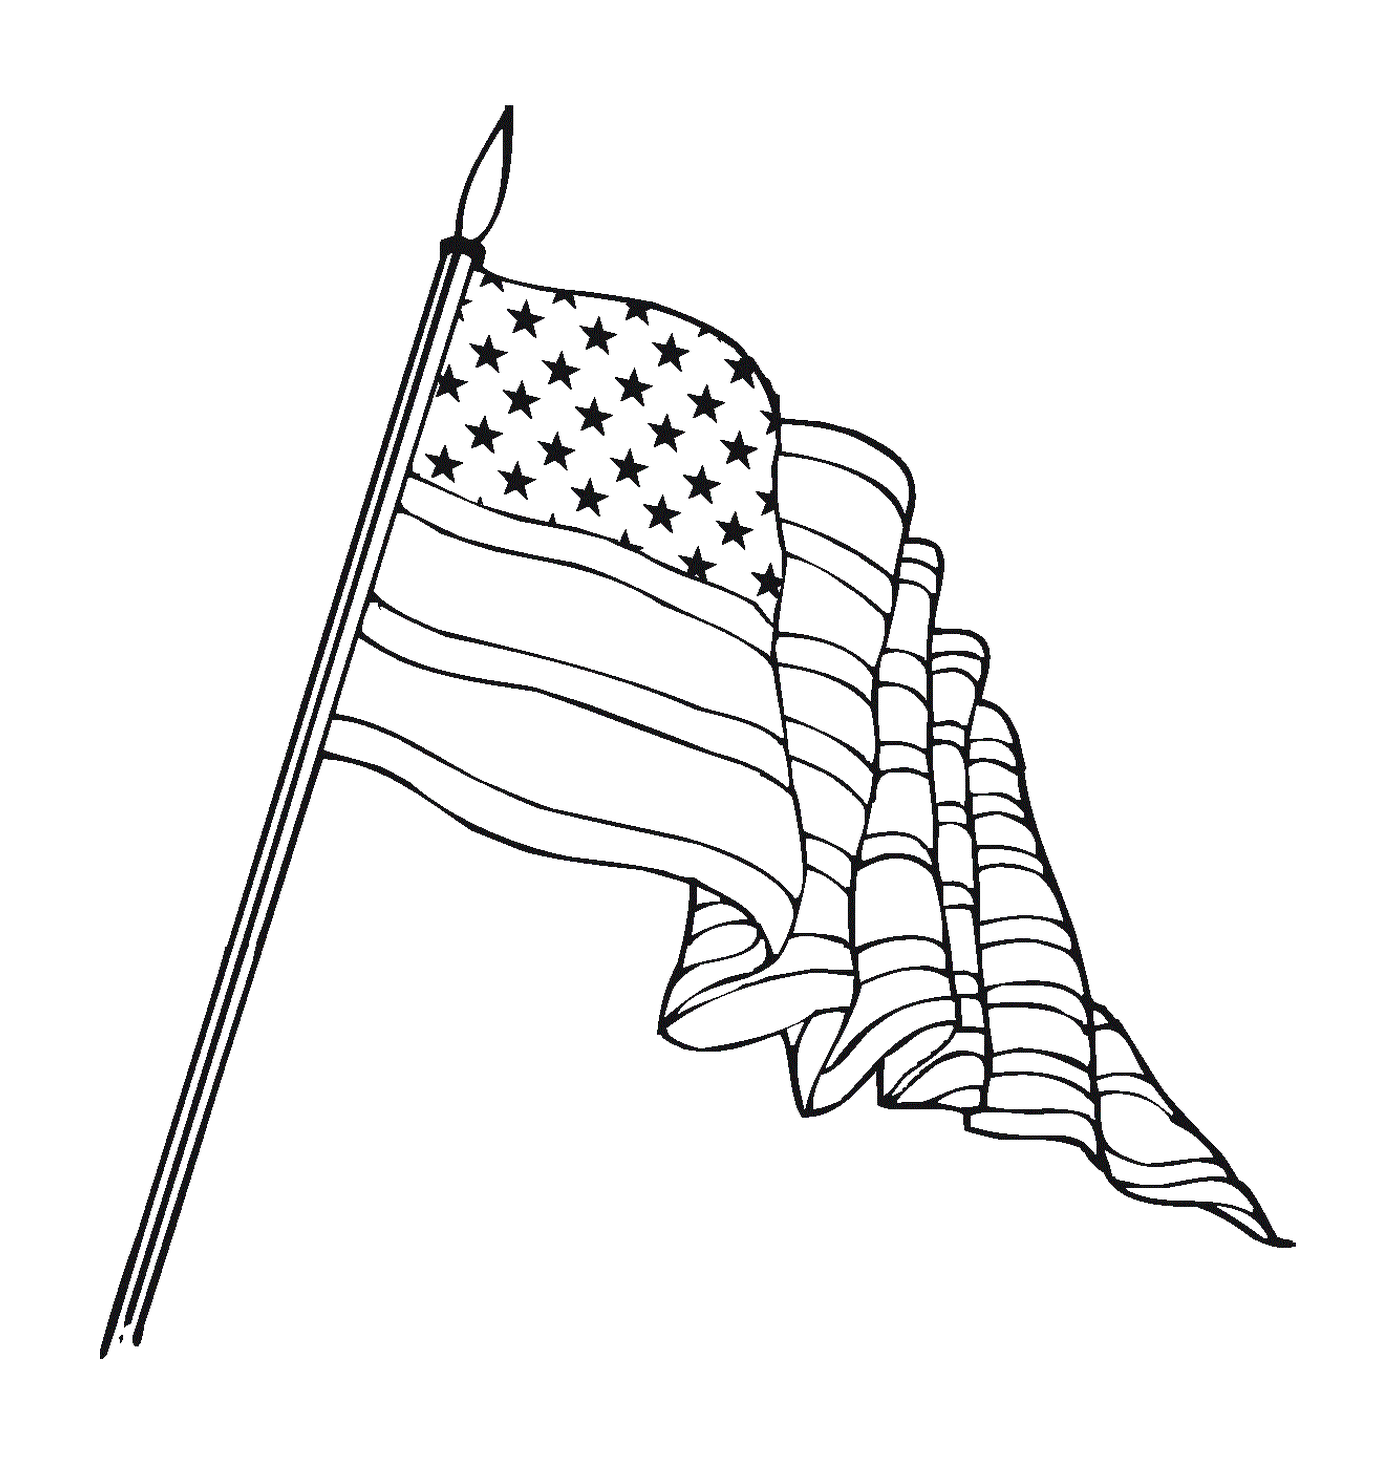  美国国旗在风中漂浮 